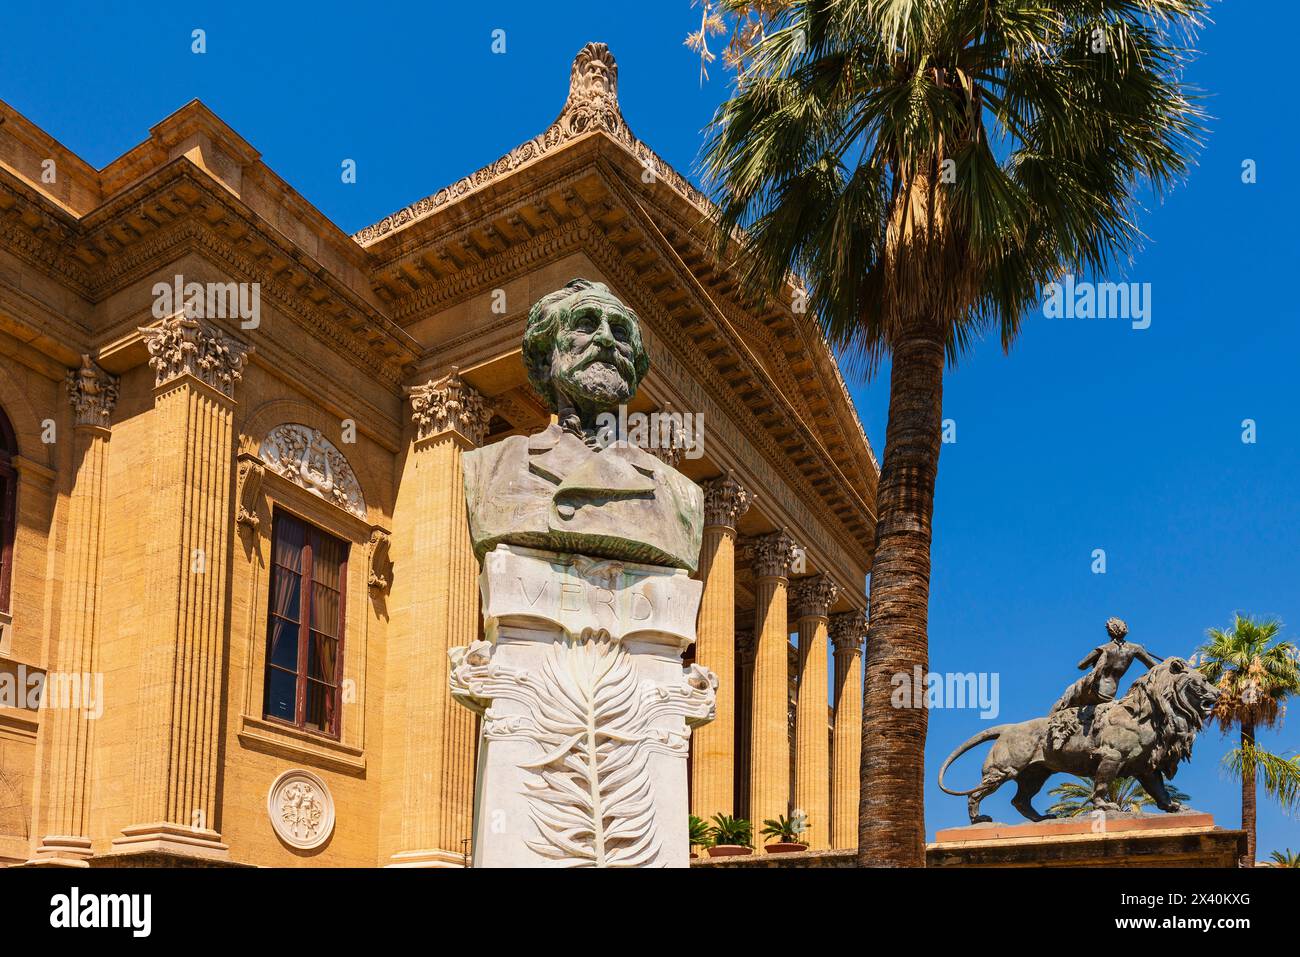 Teatro Massimo, ein Opernhaus mit der Büste von Giuseppe Verdi in Palermo, Sizilien, Italien; Palermo, Italien Stockfoto